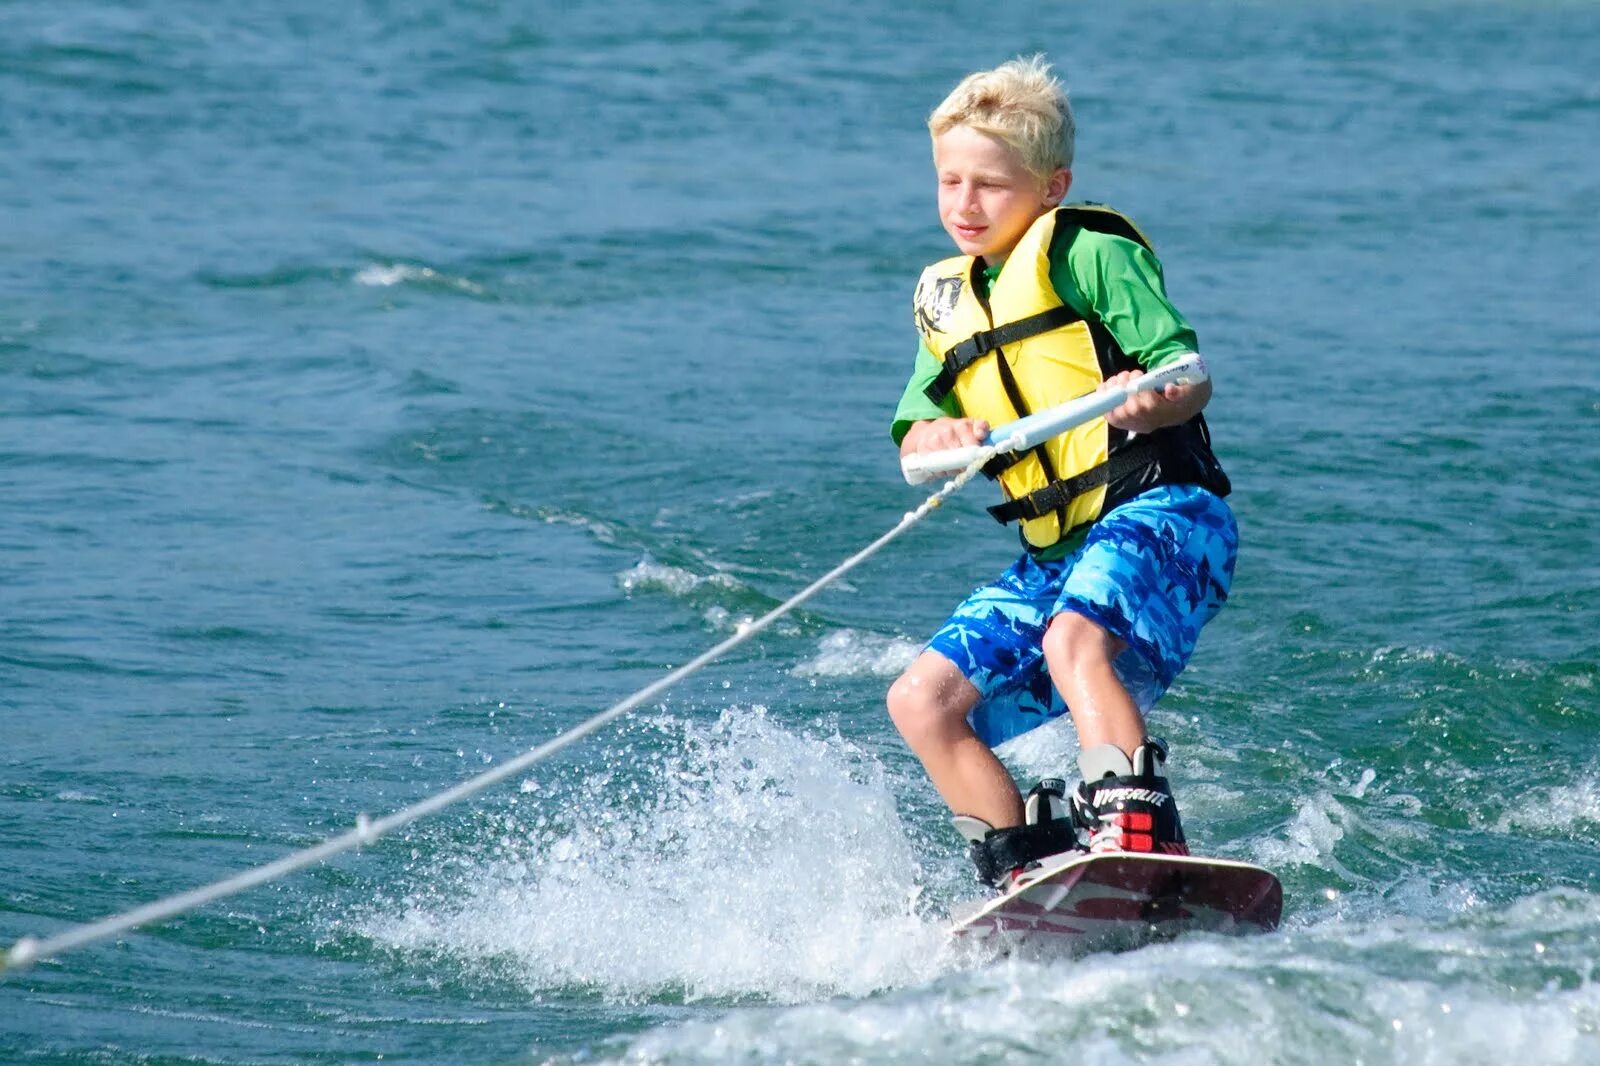 Водные виды спорта. Кататься на водных лыжах. Дети на водных лыжах. Доска для катания за катером. Do water sports